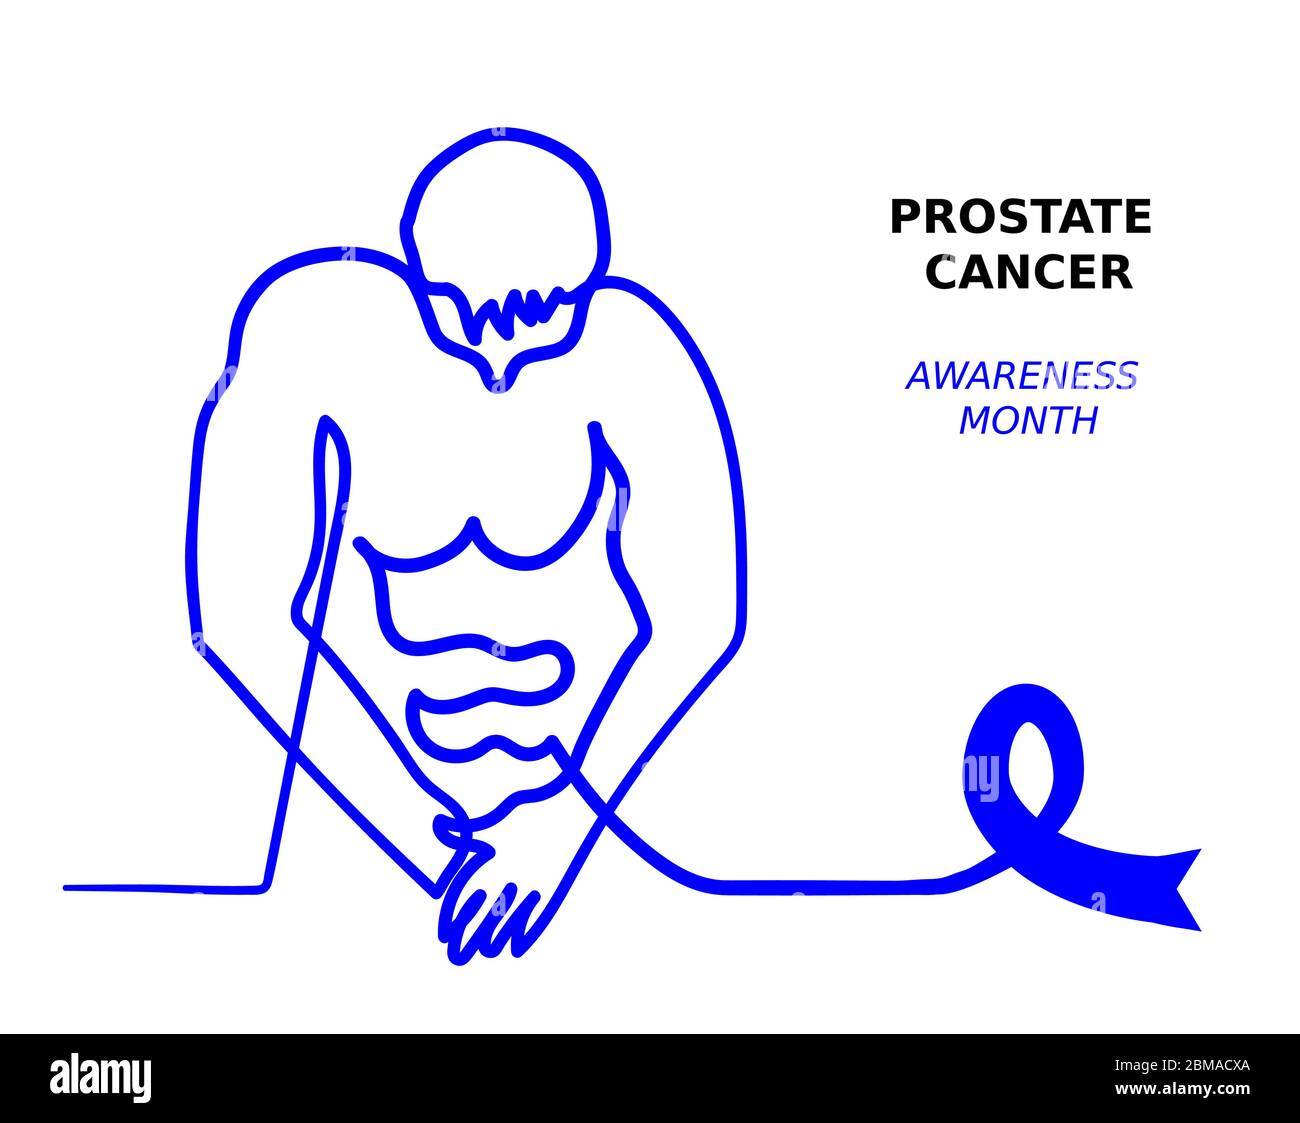 Blaues Band, Prostatakrebs Bewusstsein Monat. Mann Gesundheit Banner.Mann schaut auf seine Hose. Einfache eine Zeile Illustration gegen Krebs Stock Vektor